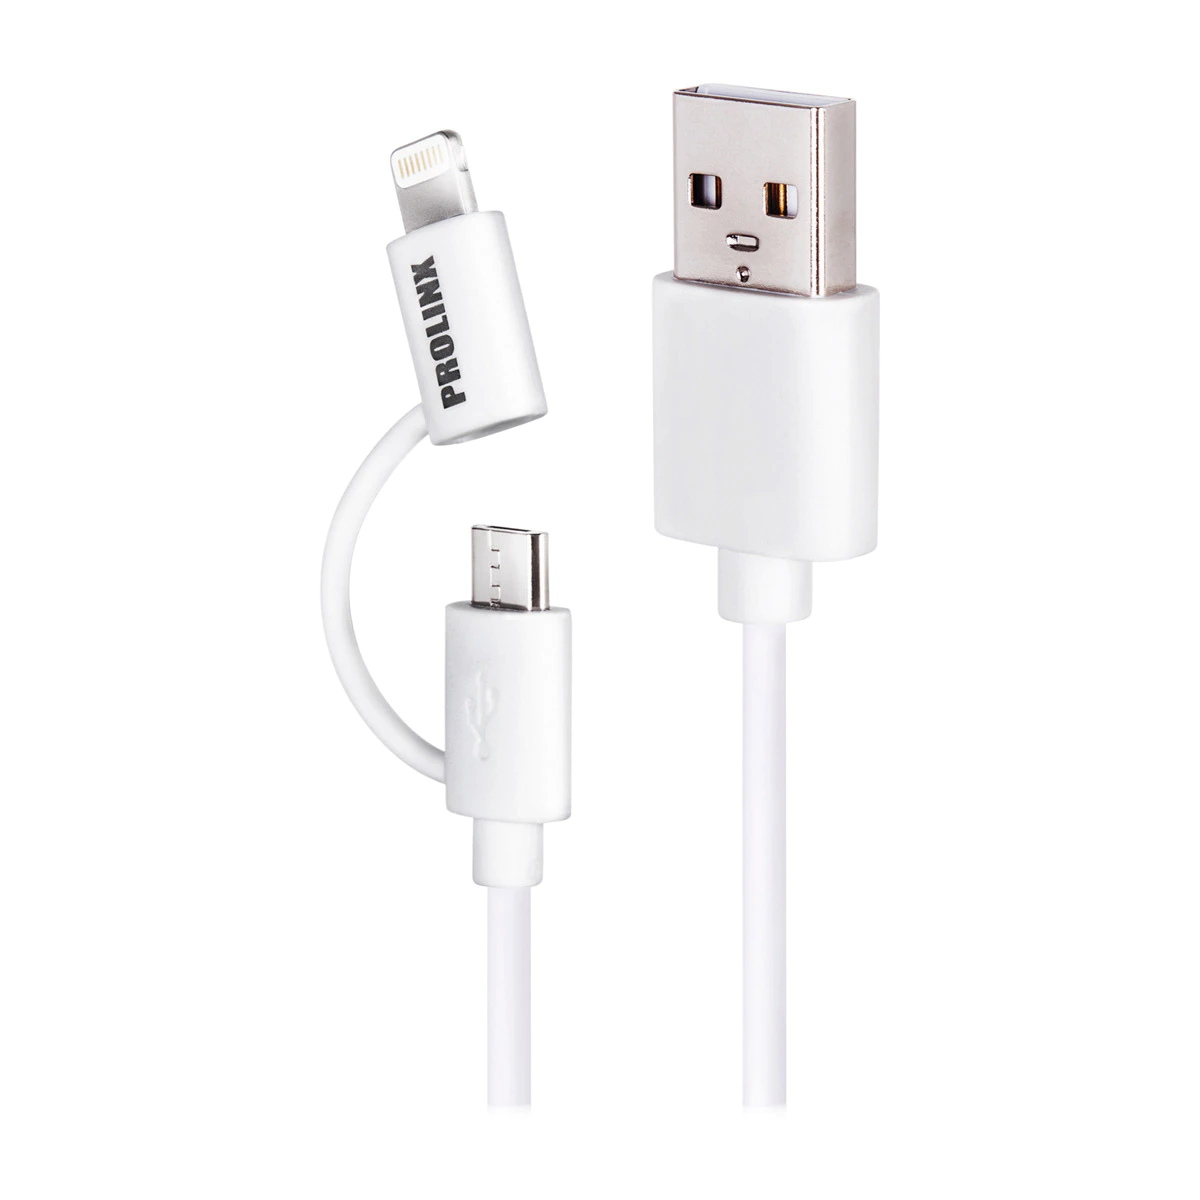 Cable de sincronización y carga Prolinx LT-D de USB »A» a micro USB »B»/ligthning de 1 metro